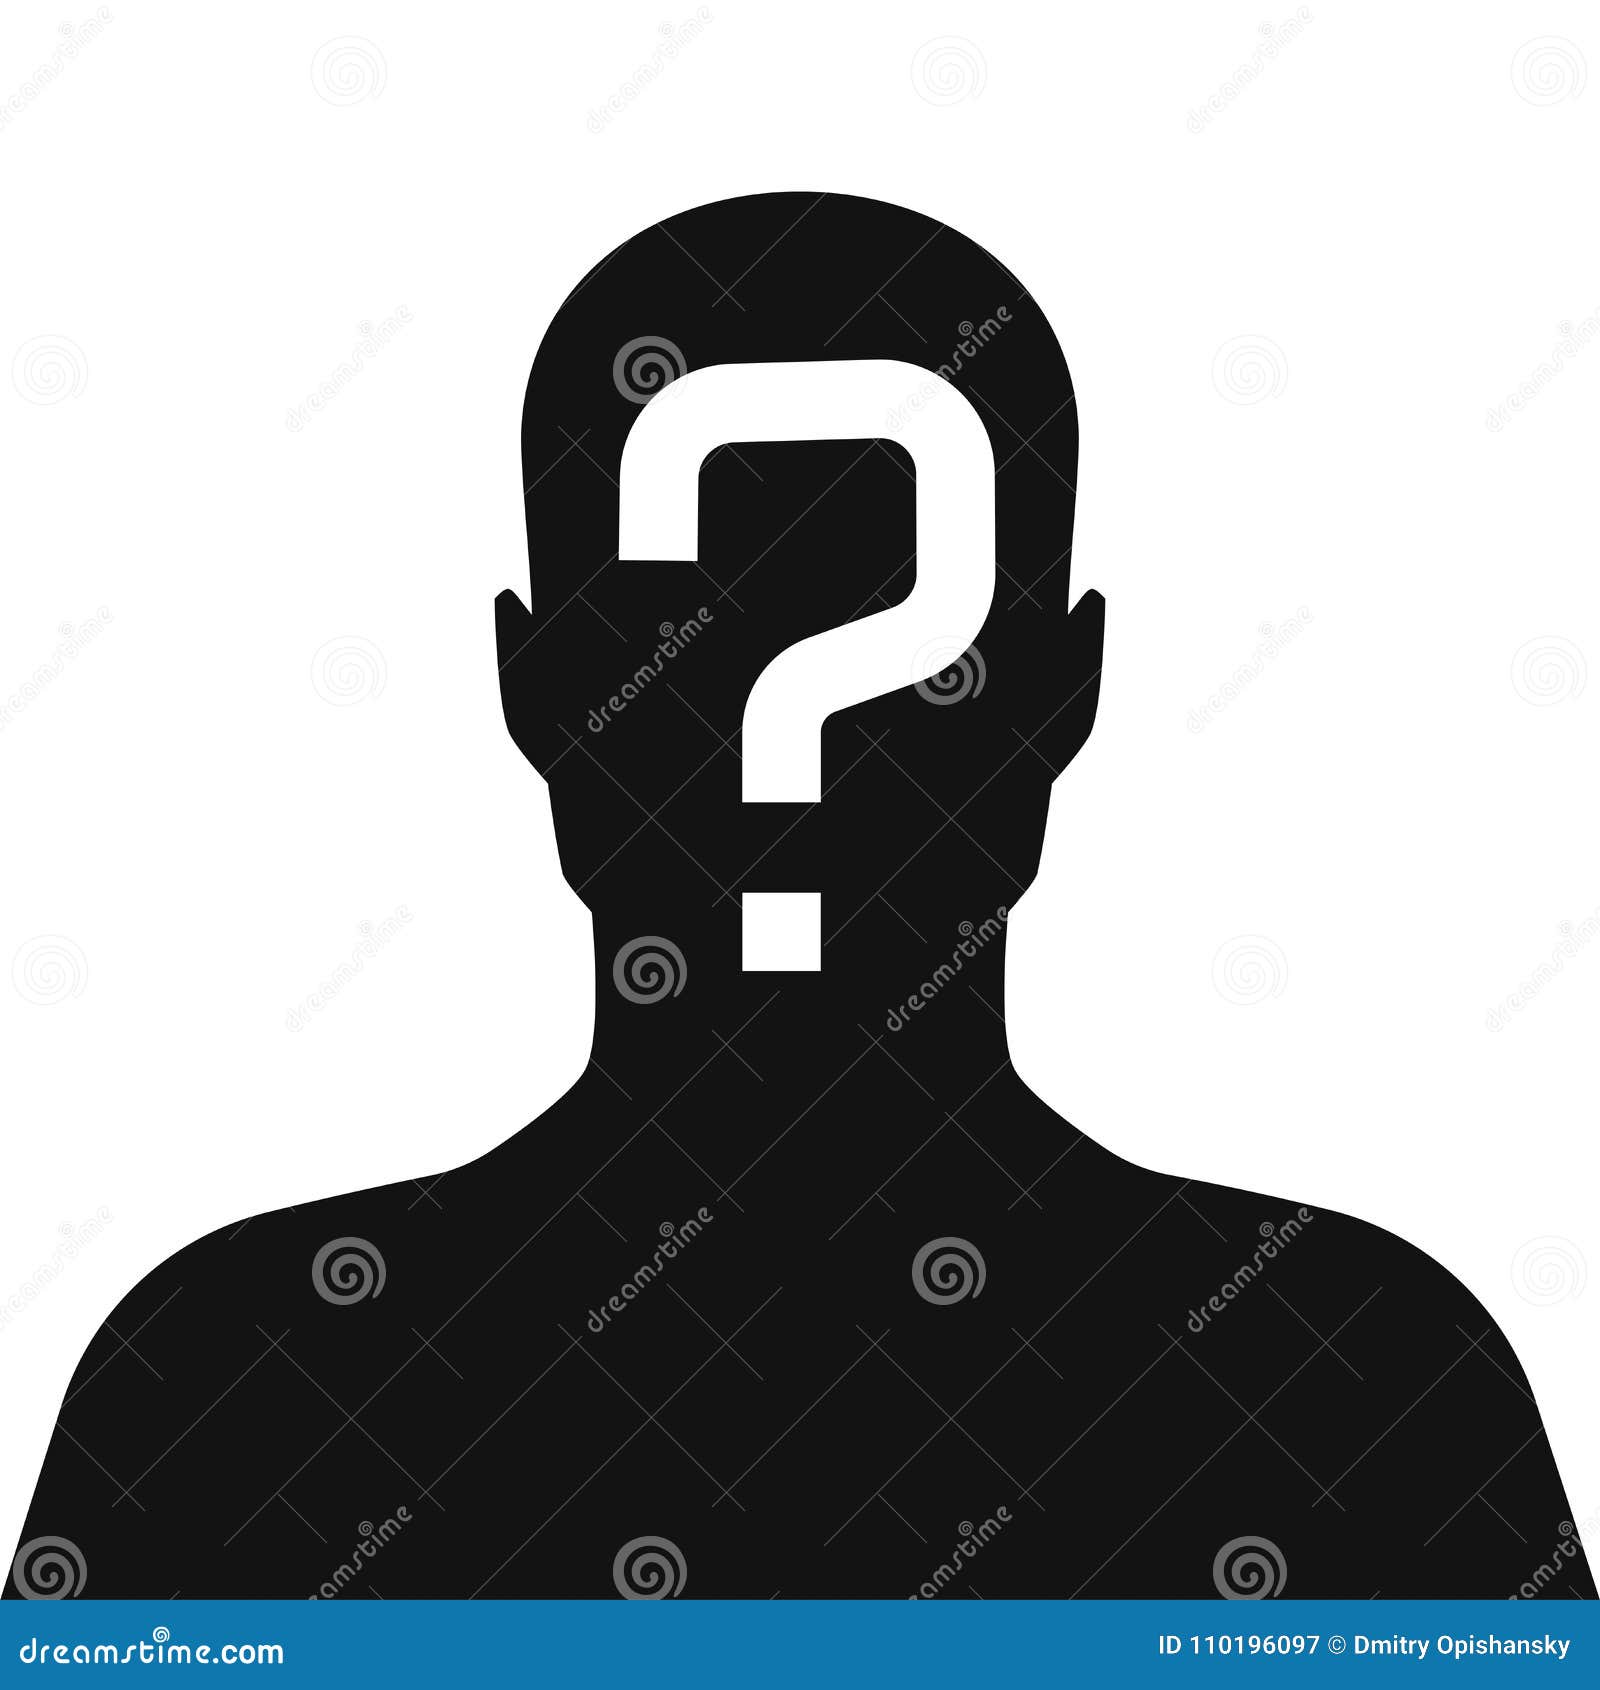 incognito, unknown person, silhouette of man